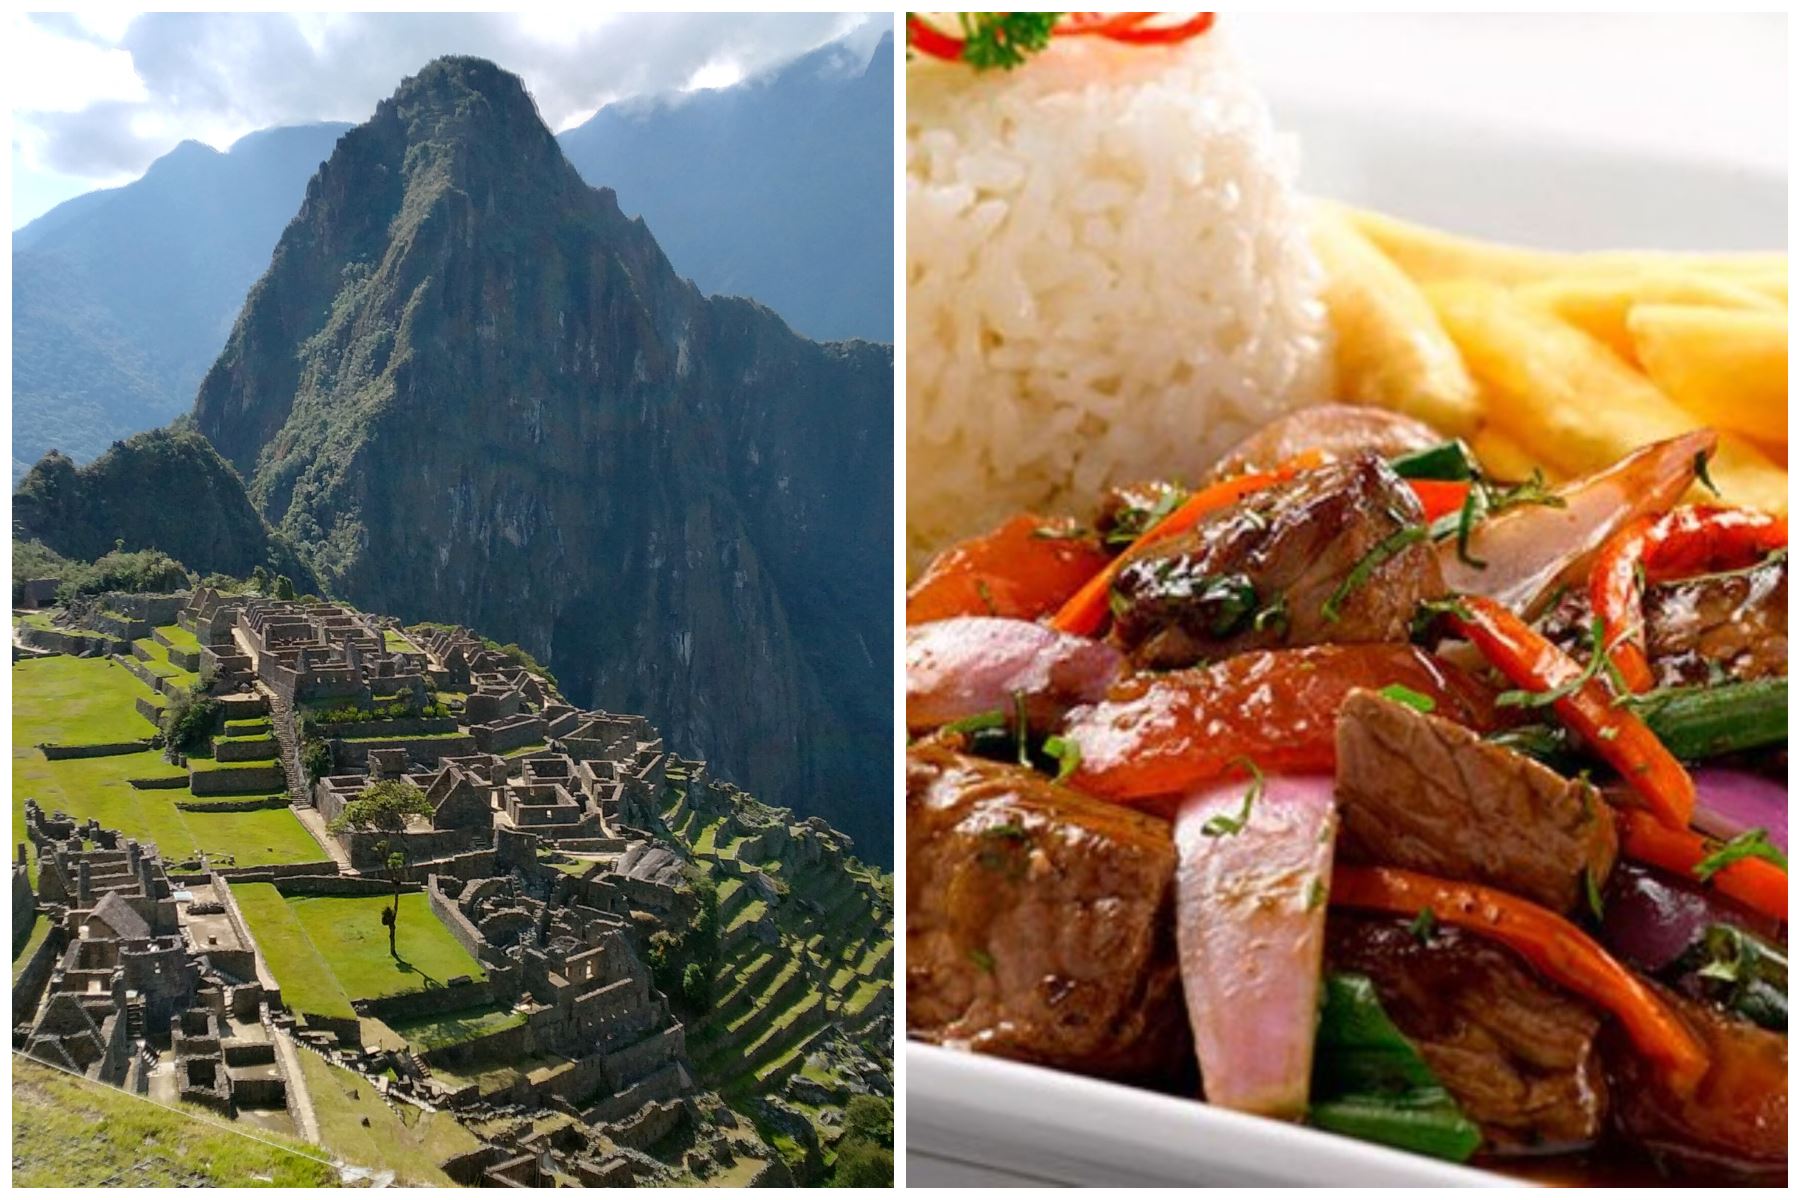 Famosa comediante japonesa mostró su gusto por gastronomía peruana en video promocional, donde se añadieron imágenes de Machu Picchu. Foto: ANDINA